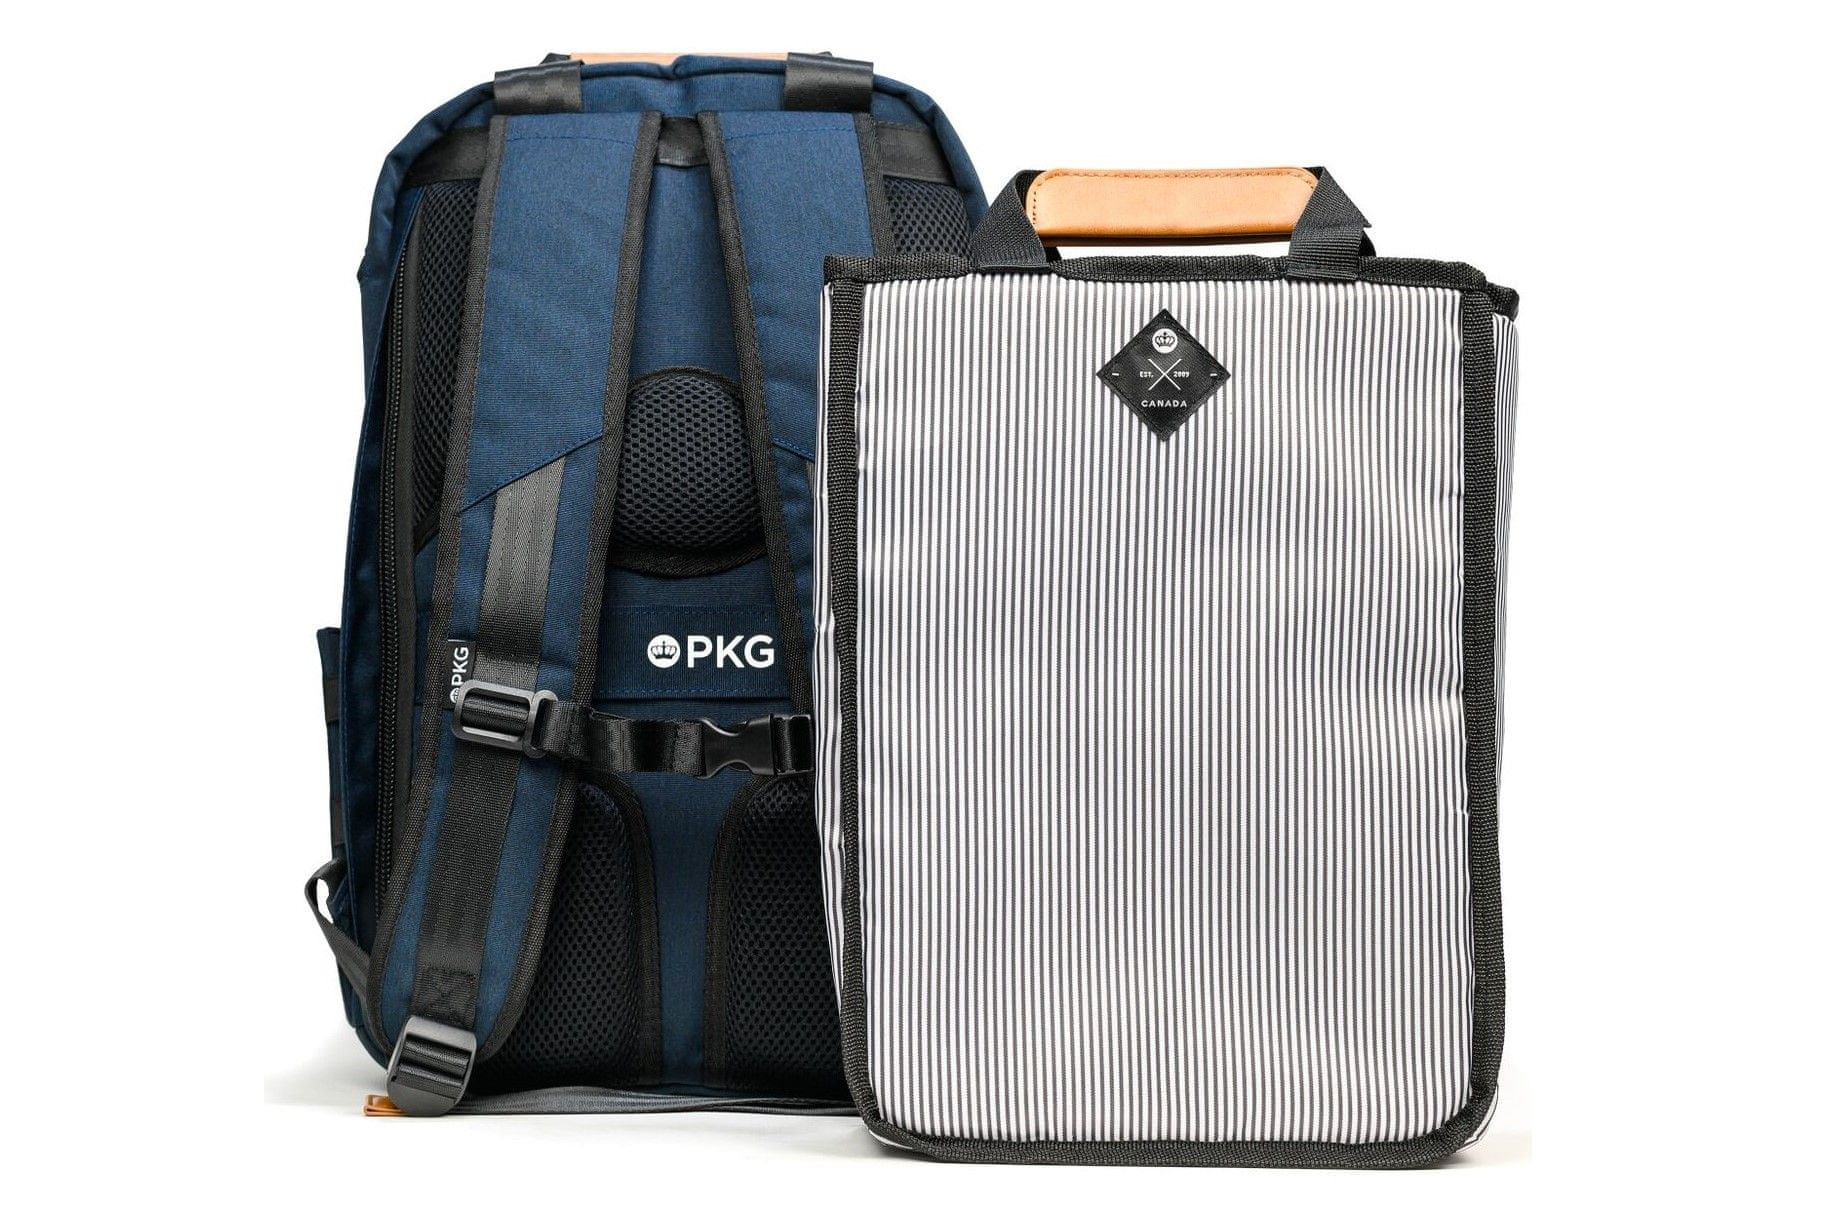 PKG ruksak rosseau 13” (33 cm)/14” (35,56 cm) (PKG-ROSS-NV01TN) praktično podstavljeni bočni džep